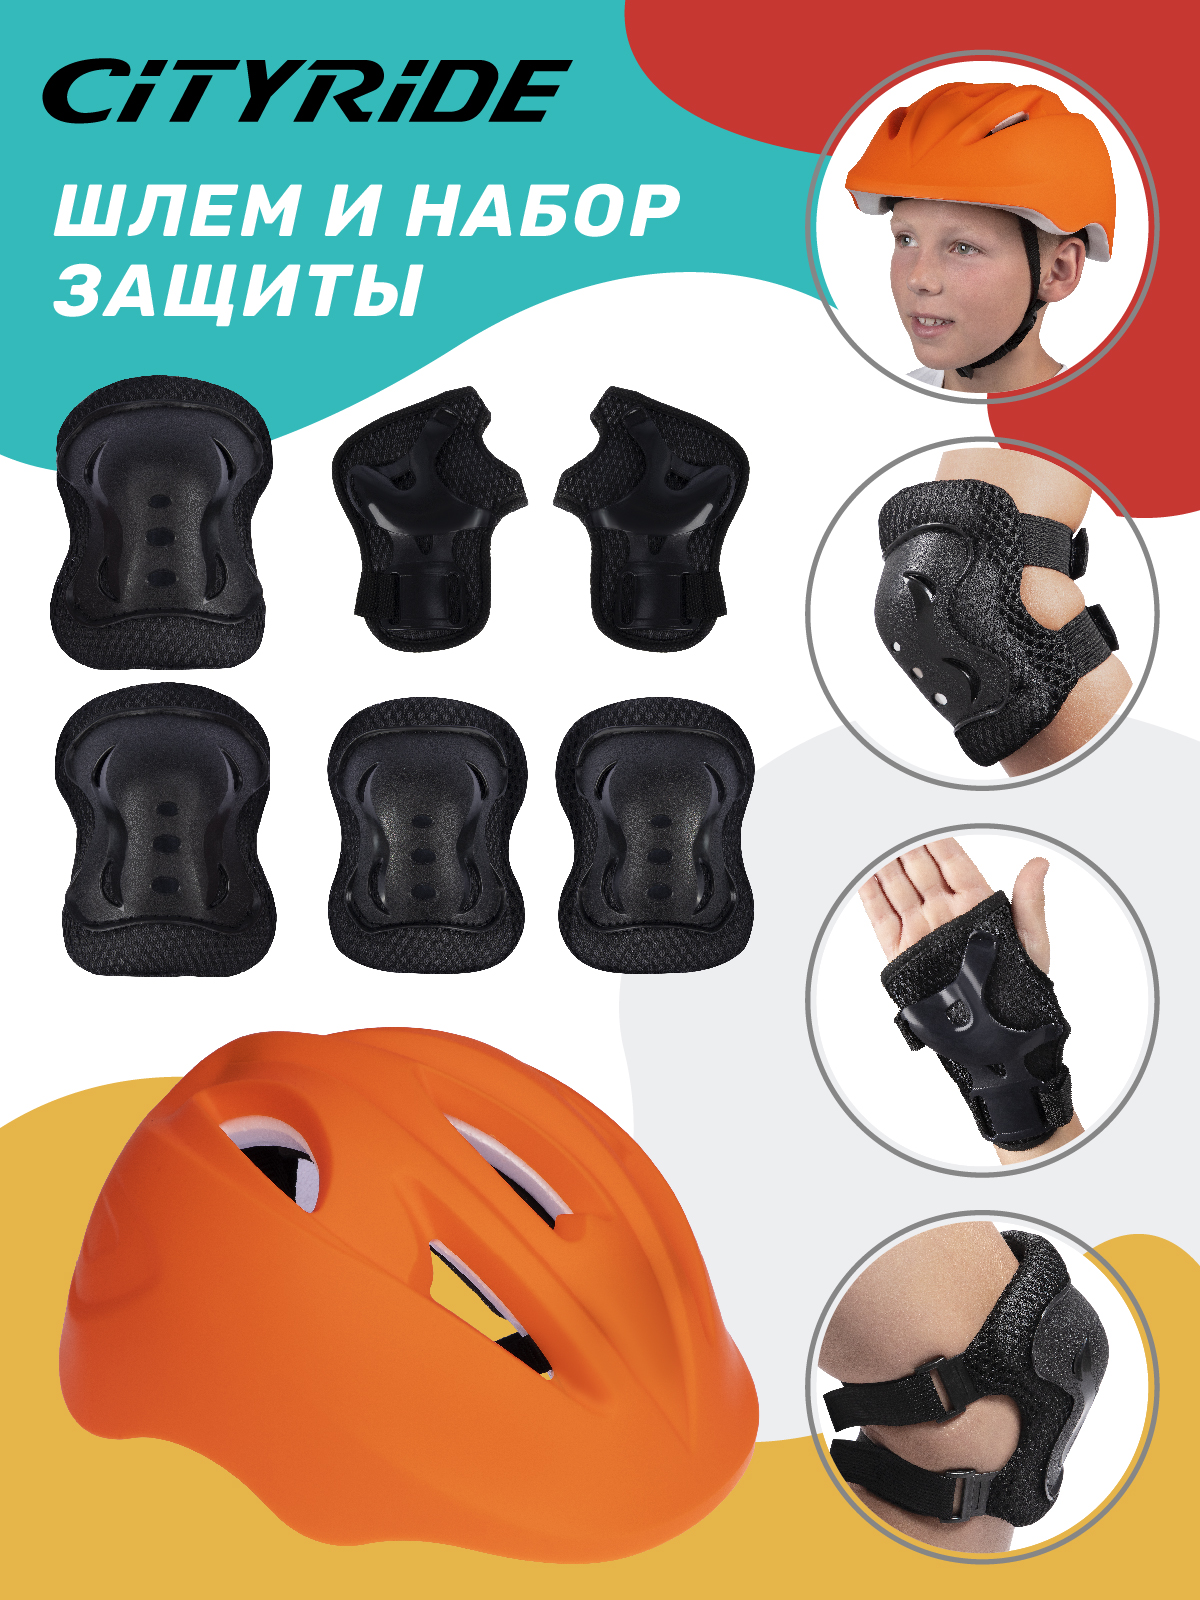 Комплект шлем, спортивная защита для детей ТМ City Ride, размер универсальный, JB0211562 скейтборд city ride дека клен 9 слоев размер 31х8 колеса pu abec 7 jb4200183